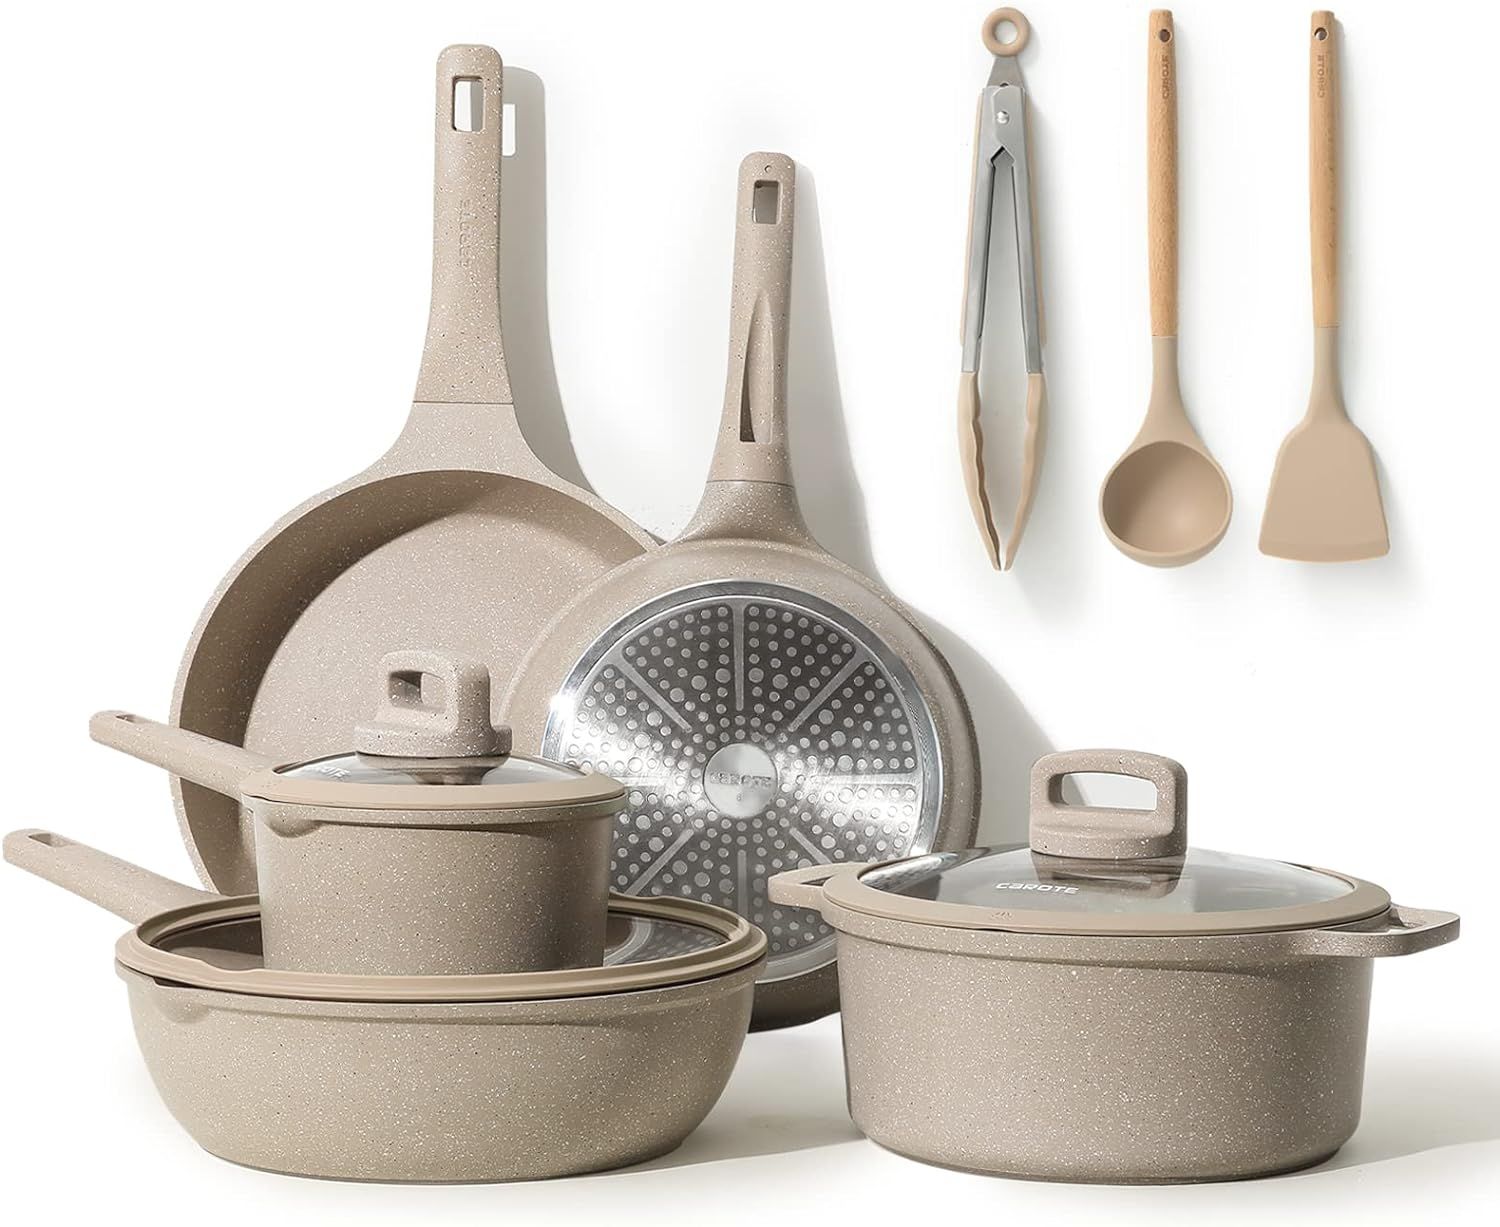 CAROTE Pots and Pans Set Nonstick, 11Pcs Kitchen Cookware Sets, Stackable Induction Cookware, Pot... | Amazon (US)